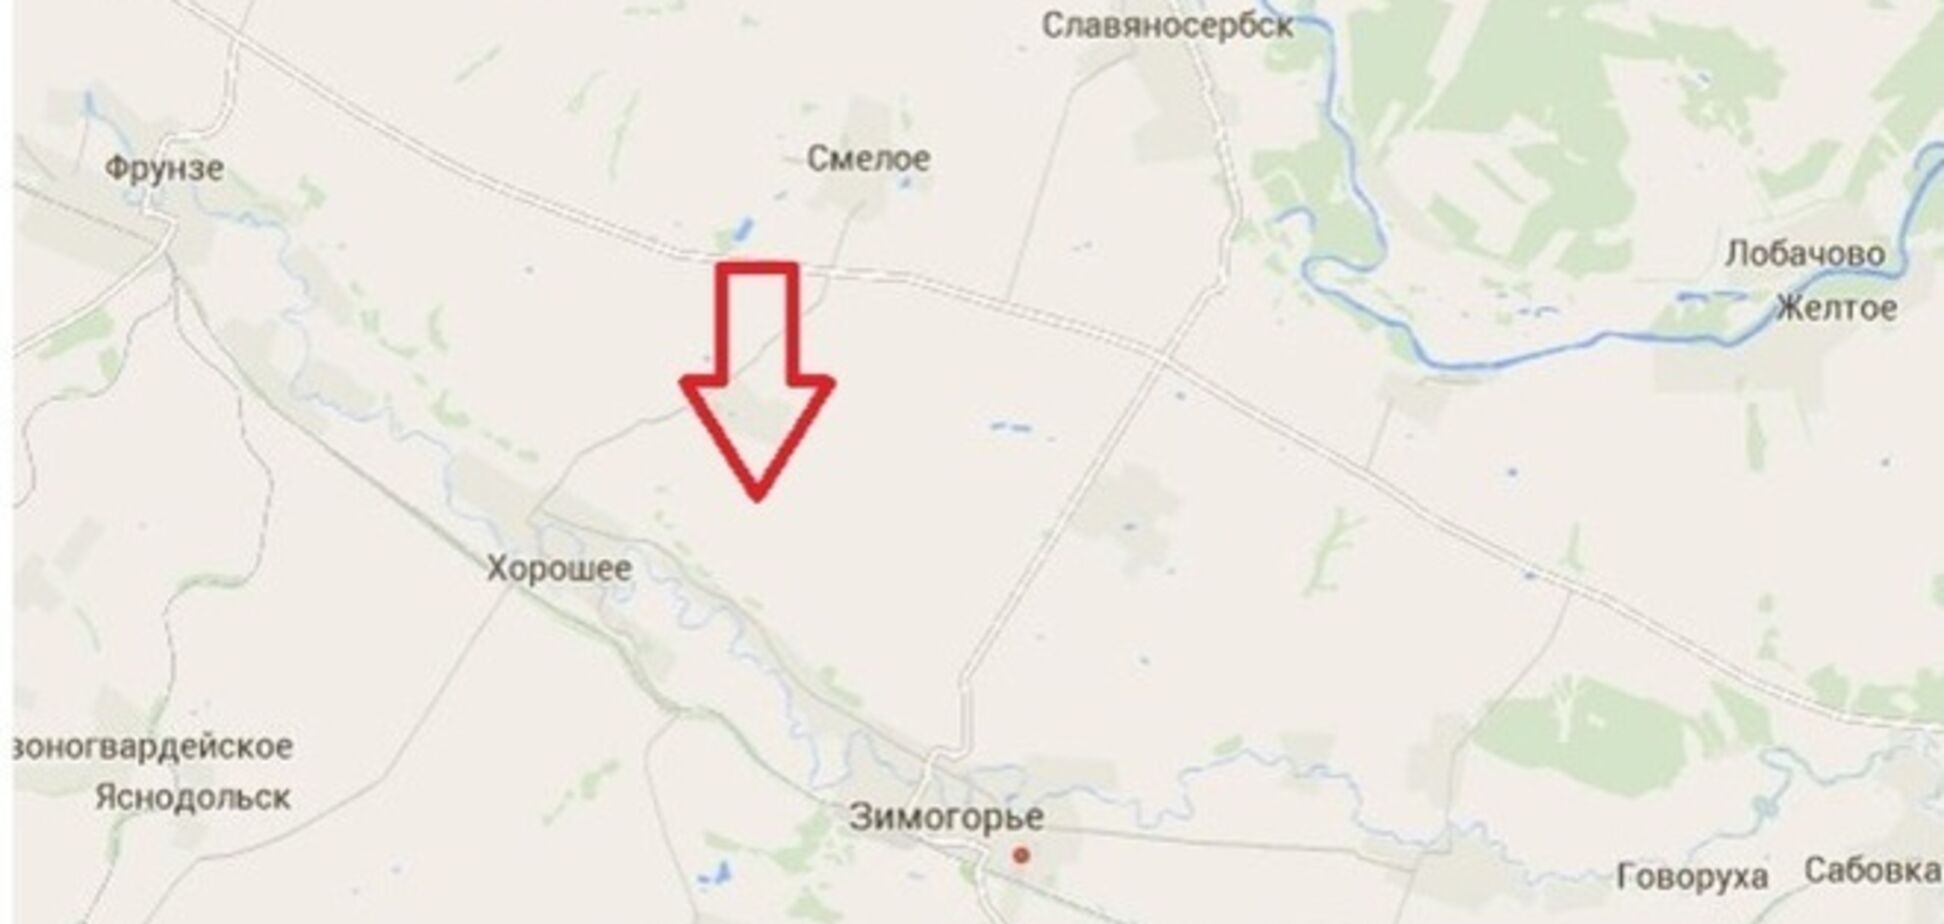 Прес-центр АТО заявляє про доставку води і продовольства військовим 32 блокпоста на Луганщині